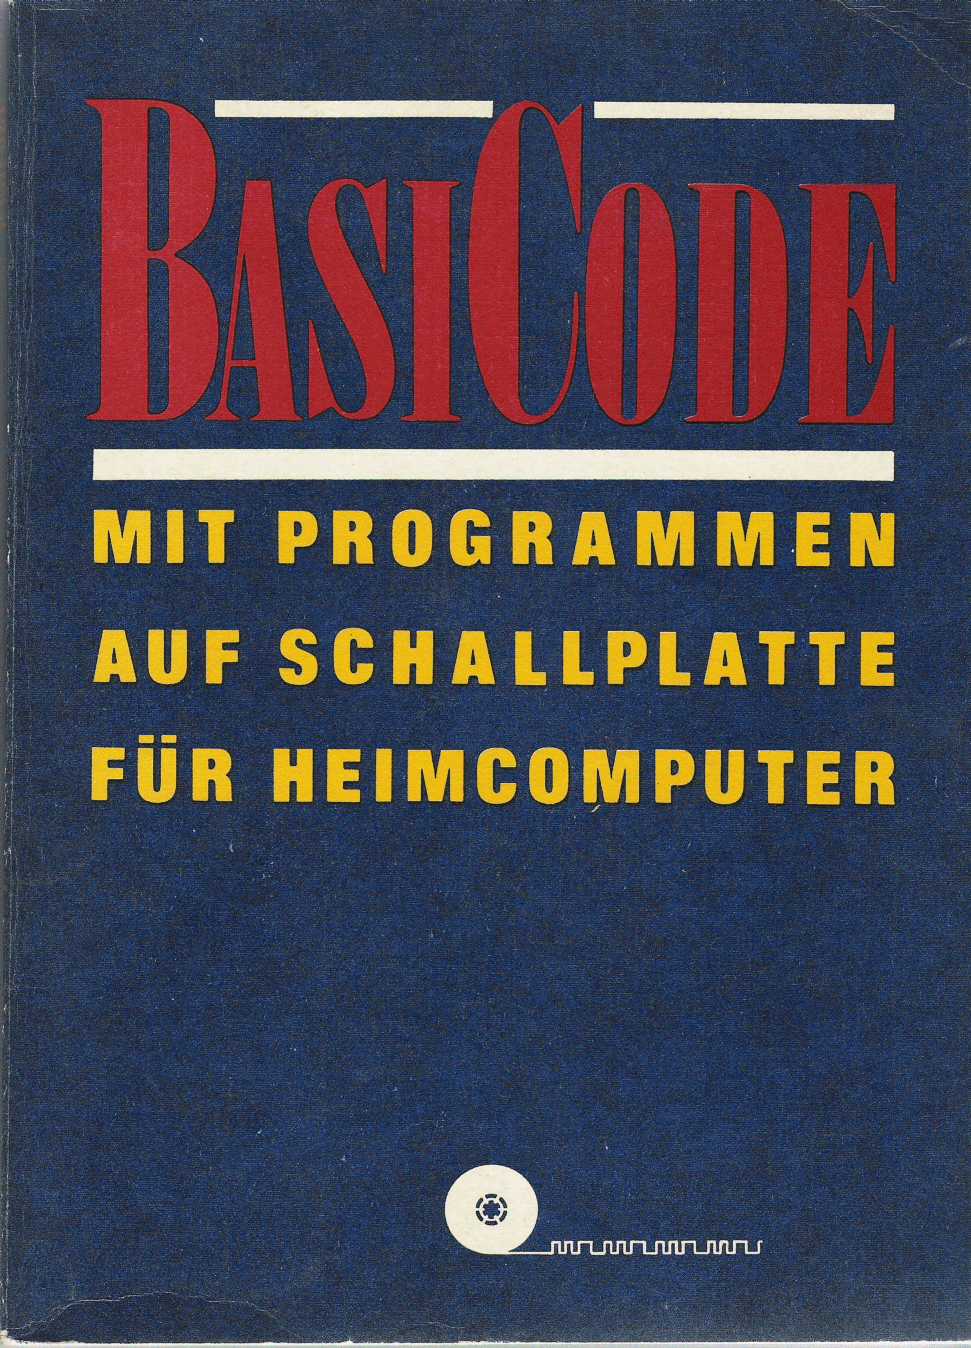 BasiCode: Mit Programmen auf Schallplatte fur Heimcomputer image, screenshot or loading screen